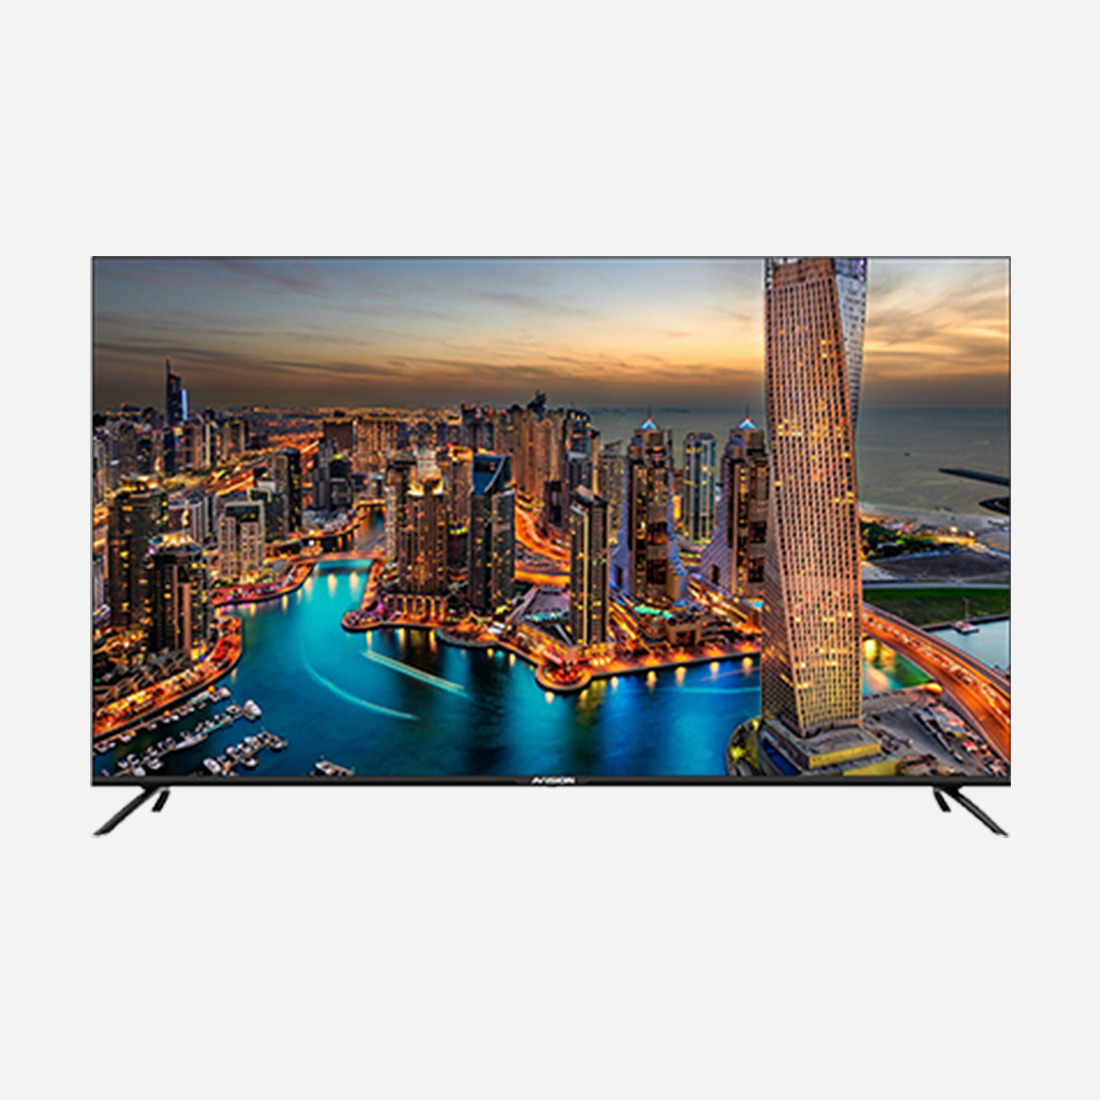 Avision 50 Inch Frameless 4k Digital Smart Led Tv 50ul80c Avision Ph